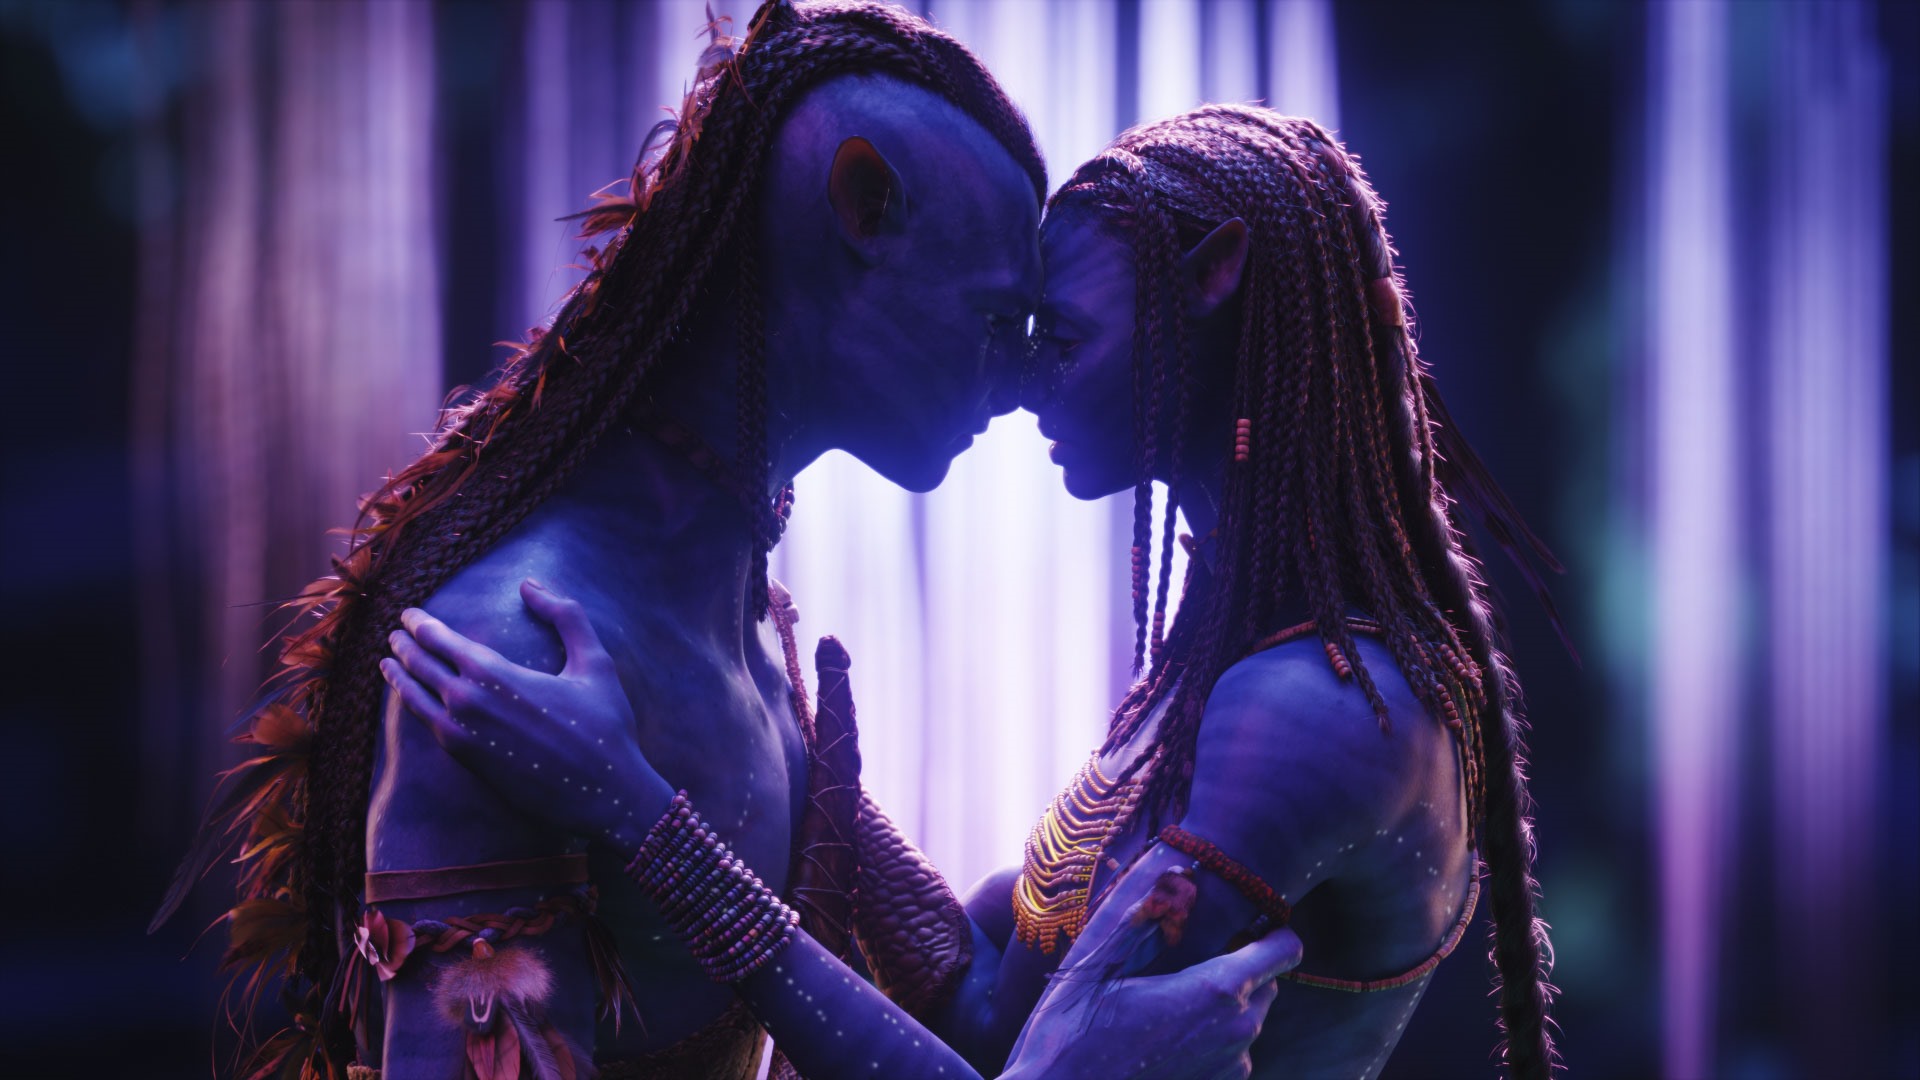 Bom tấn Hollywood Avatar trở lại được dự đoán cán mốc phim 3 tỉ USD?